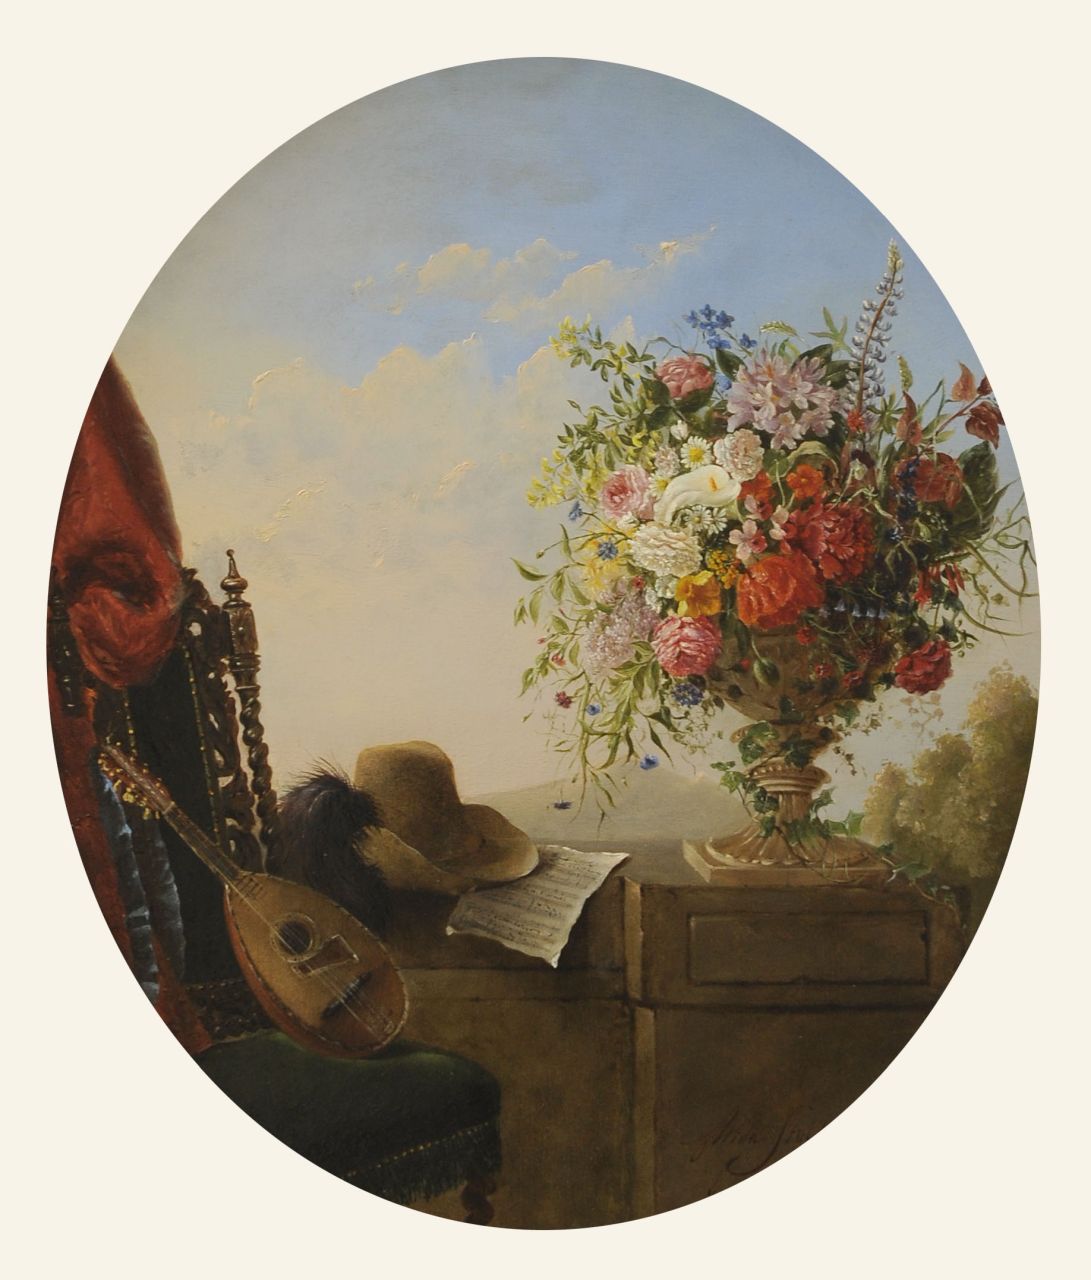 Stolk A.E. van | 'Alida' Elisabeth van Stolk | Gemälde zum Verkauf angeboten | Stilleben mit Blumen, Hut und Mandoline, Öl auf Holz 51,0 x 42,0 cm, Unterzeichnet r.u. und datiert 1853